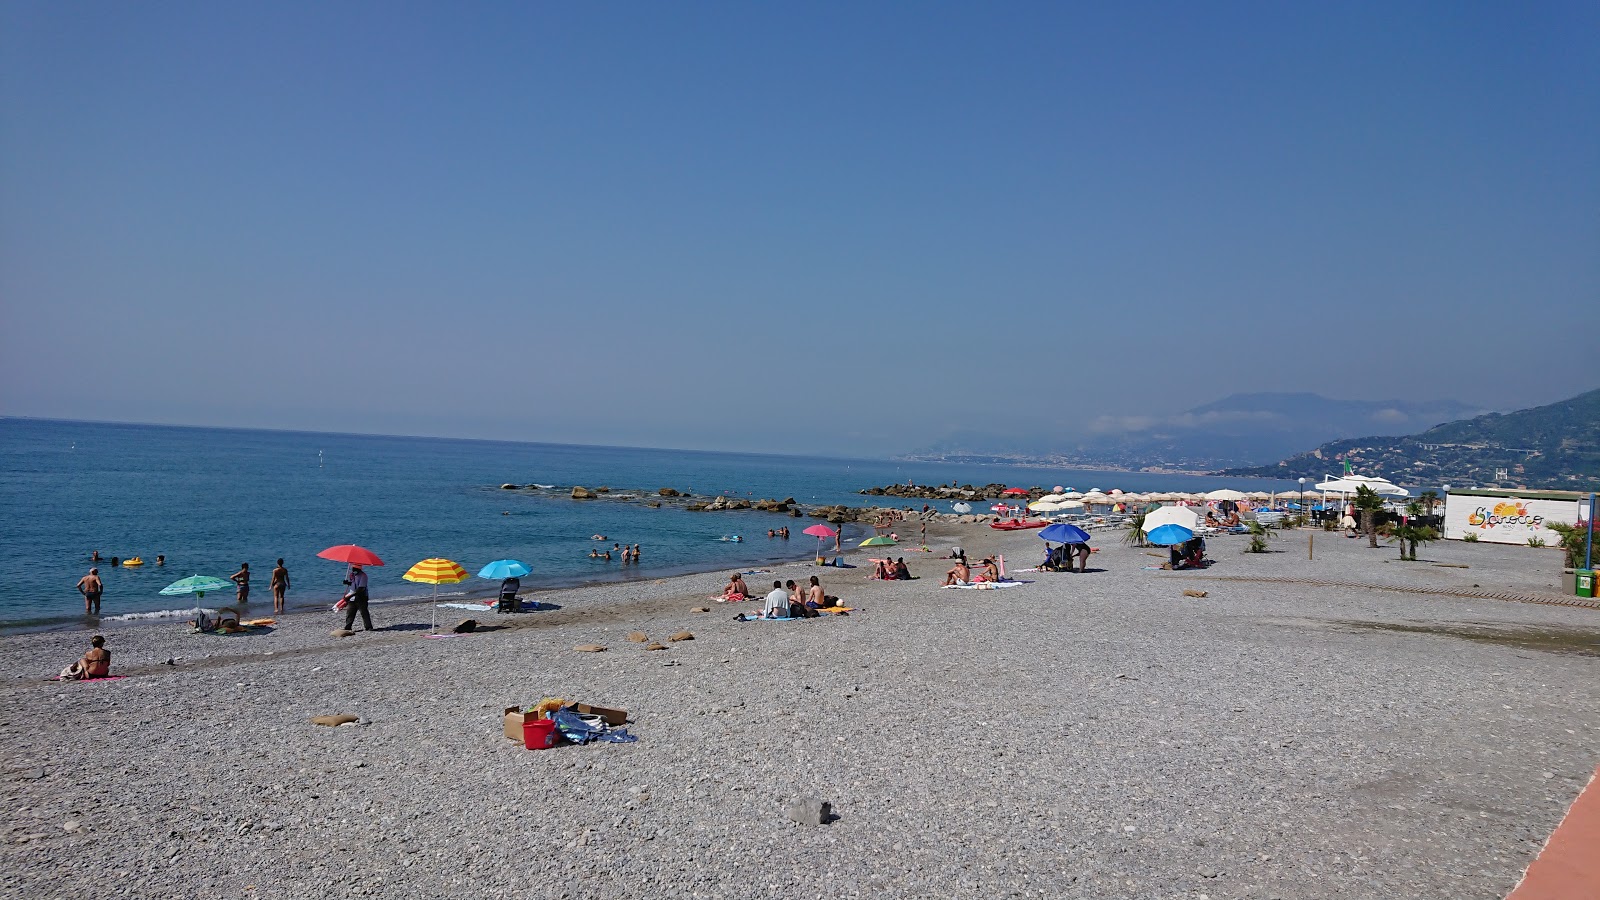 Fotografie cu Spiaggia Ventimiglia cu o suprafață de apa albastra